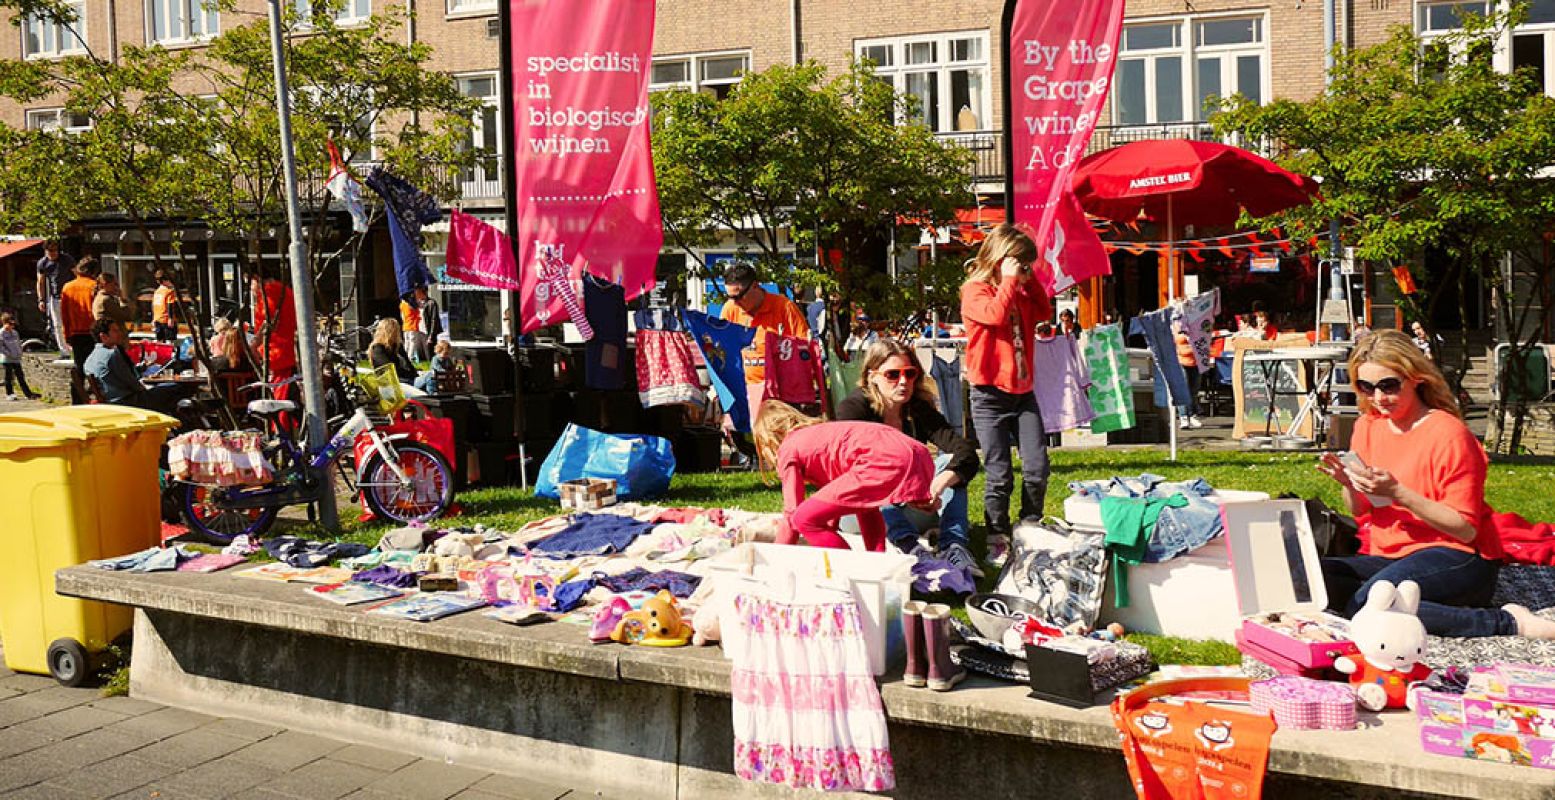 Struin gezellig alle vrijmarkten af, of strijk zelf op een kleedje neer. Fotograaf:  amsfrank . Licentie:  Sommige rechten voorbehouden . Bron:  Flickr.com .